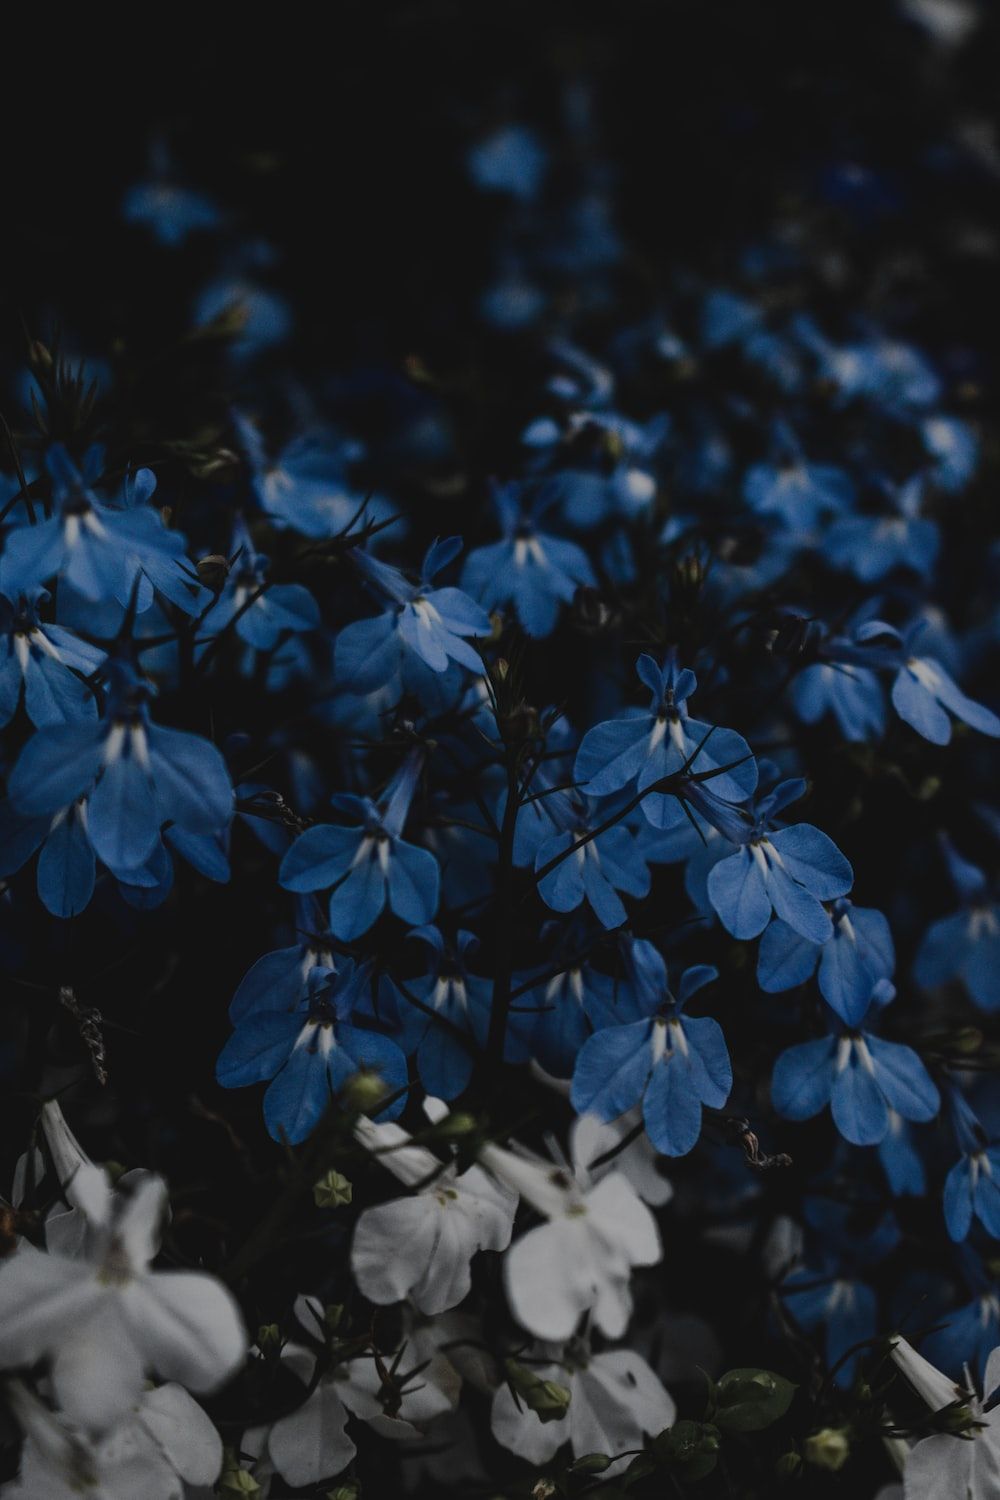  Blumen Blau Hintergrundbild 1000x1500. Foto zum Thema Ein Strauß blauer und weißer Blumen auf einem Feld